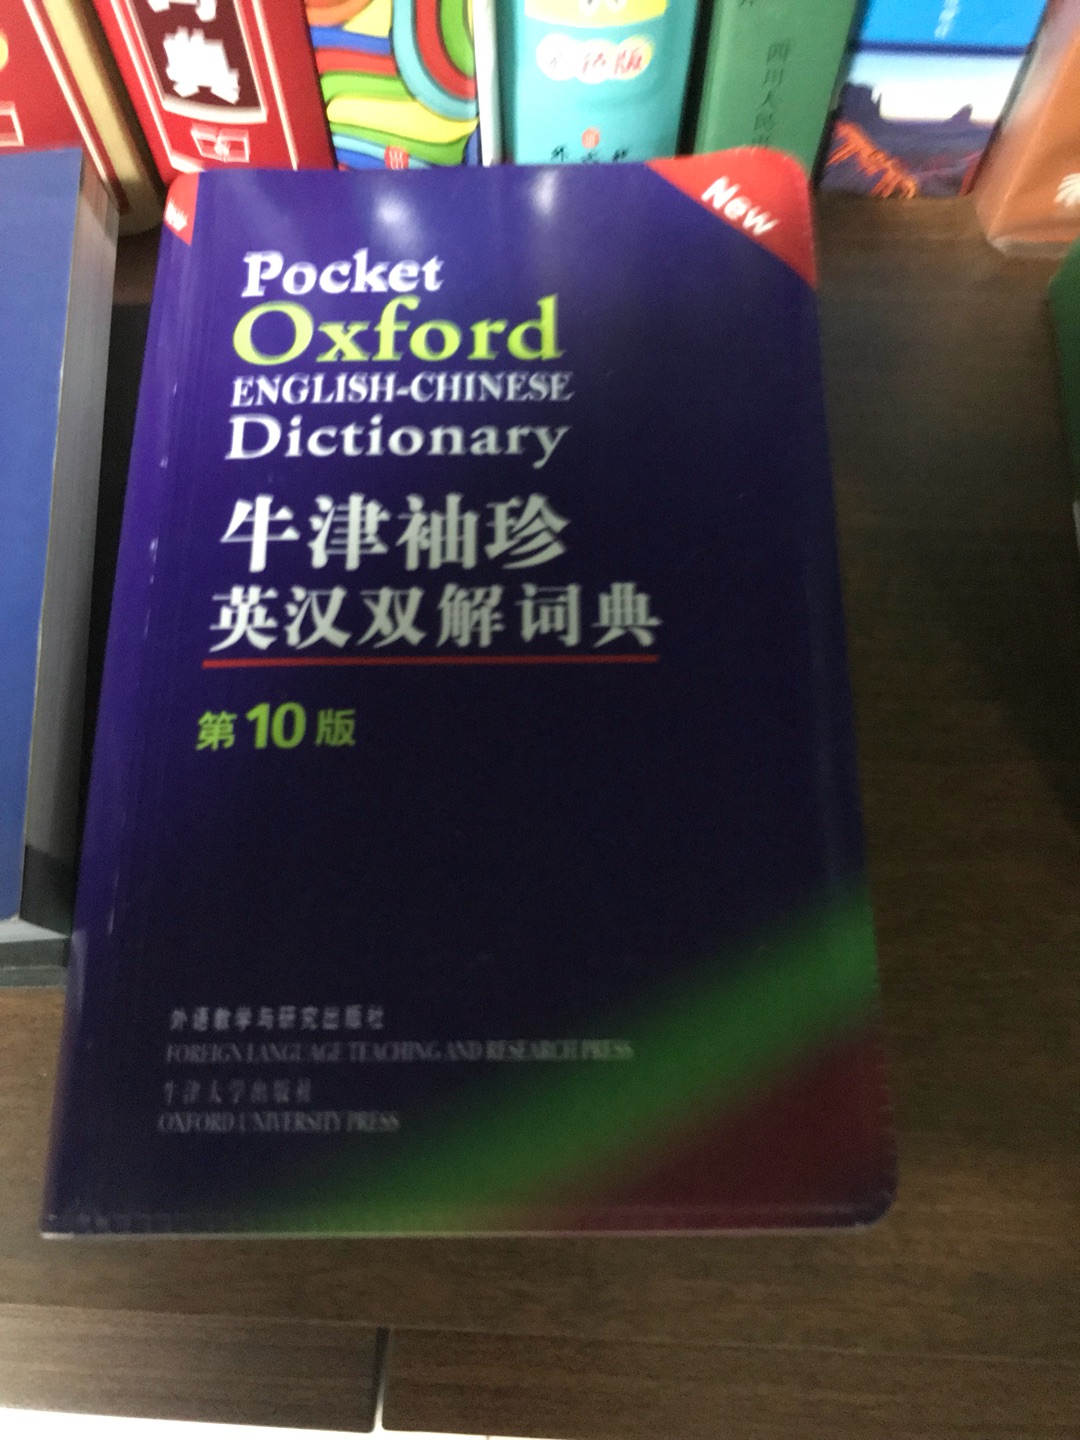 买词典为单买的顺便买了托福词汇